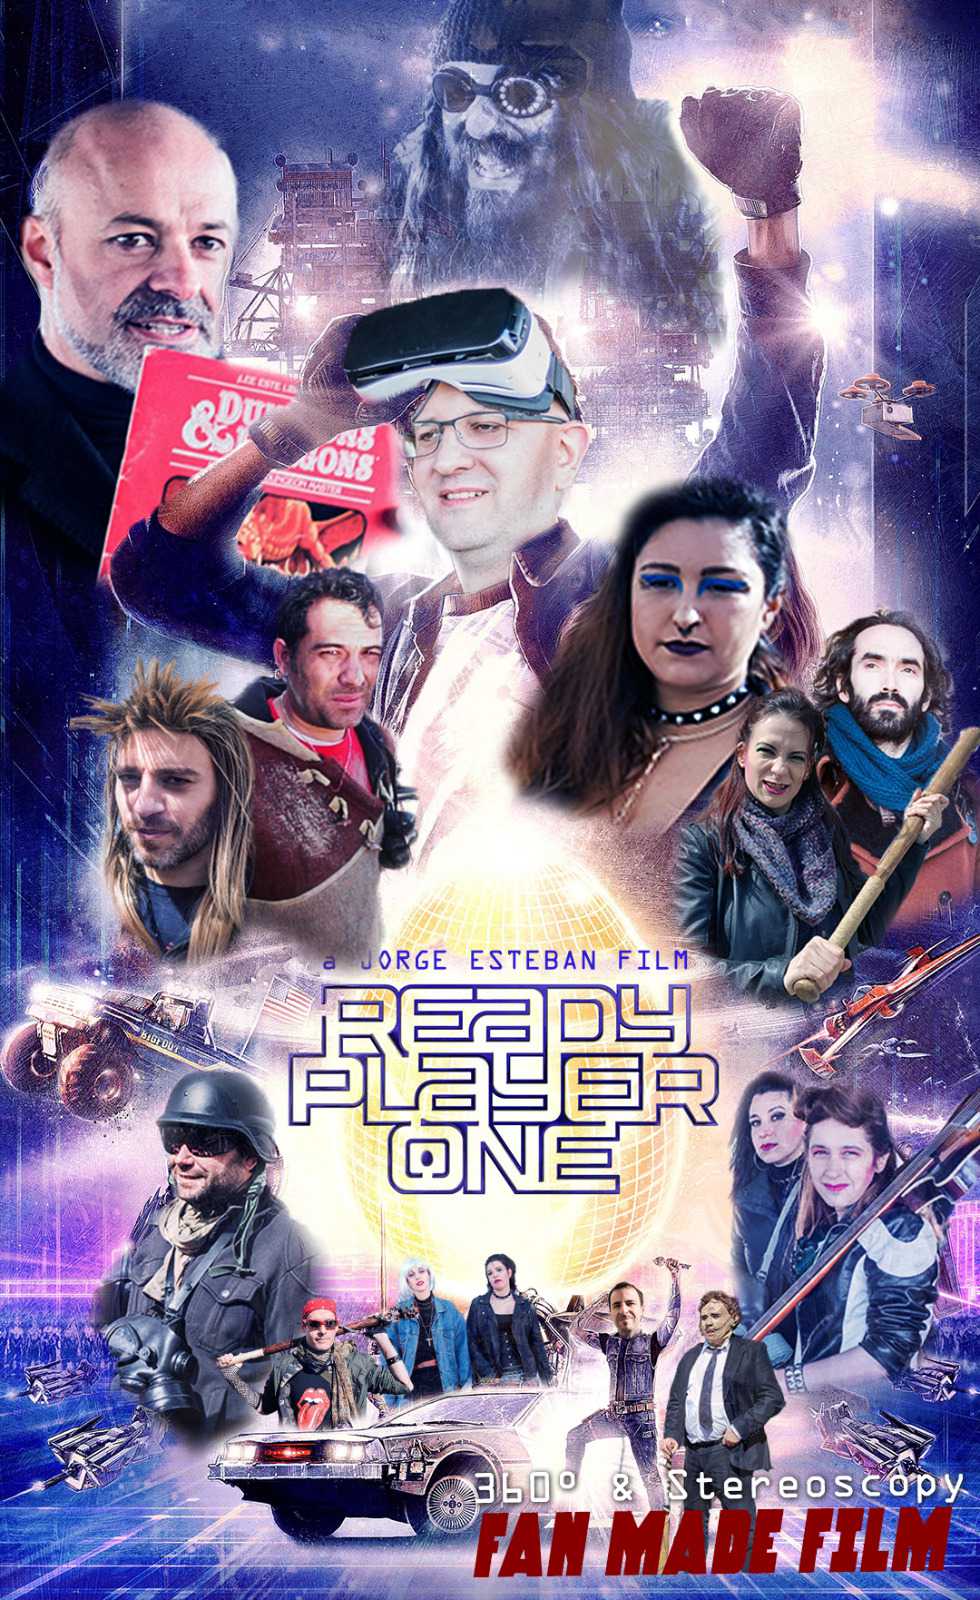 READY PLAYER ONE personajes - Web de cine fantástico, terror y ciencia  ficción